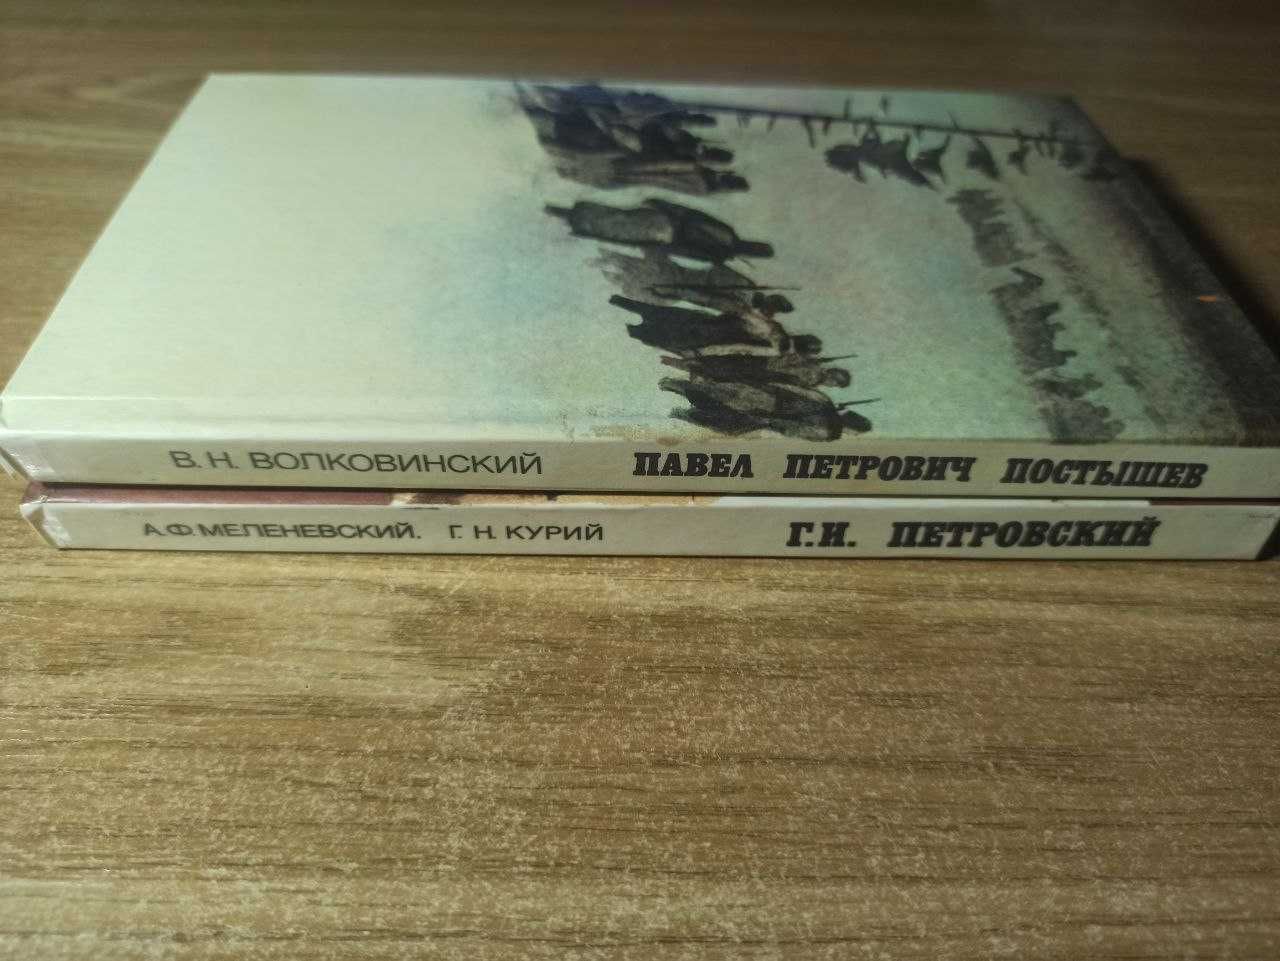 Книги политическая литература про Г.И. Петровского и П.П. Постышева